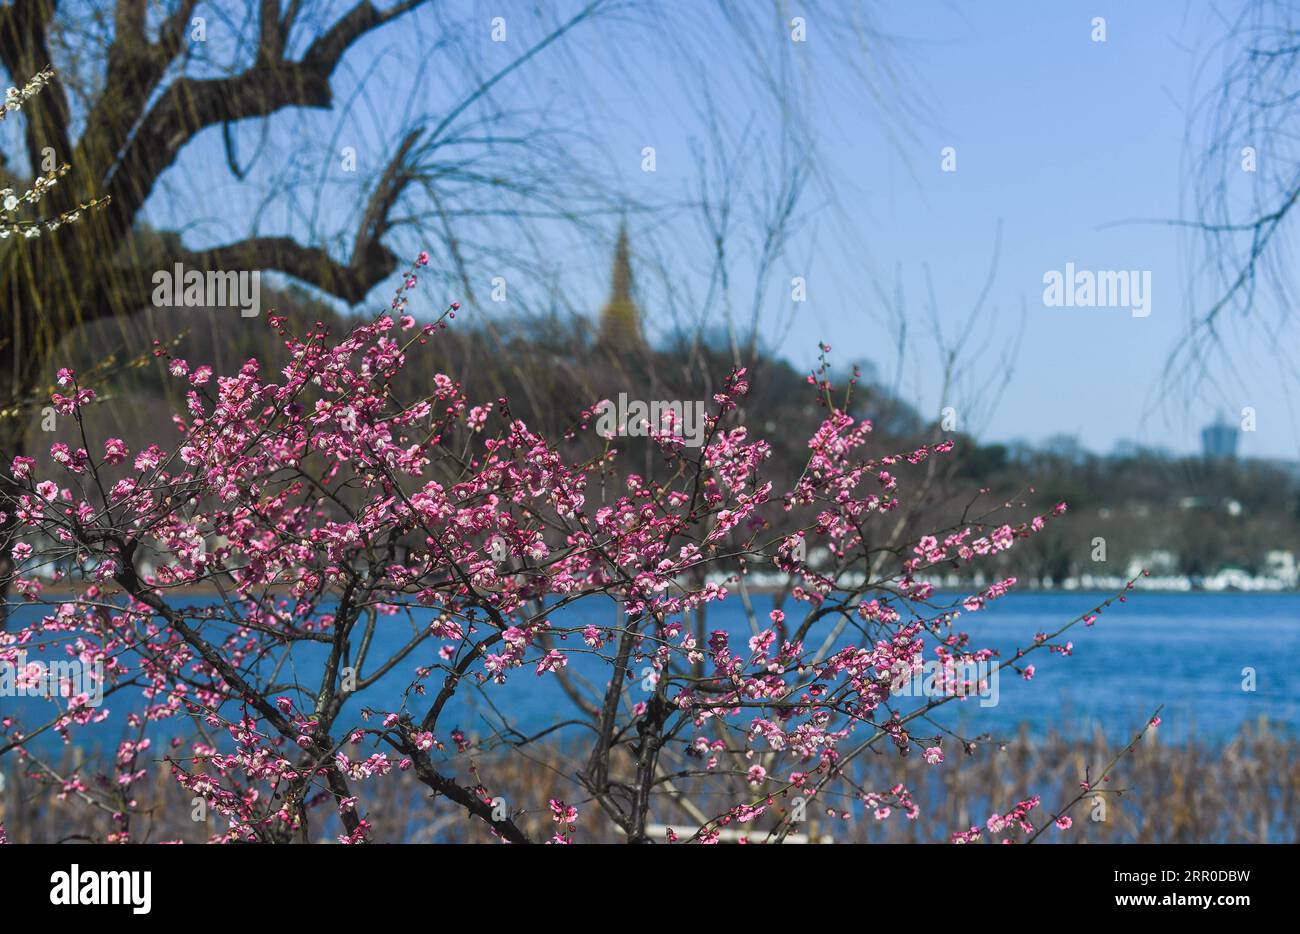 200810 -- HANGZHOU, 10. Aug. 2020 -- Foto vom 17. Februar 2020 zeigt Pflaumenblüten in einem Park des malerischen West Lake in Hangzhou, der ostchinesischen Provinz Zhejiang. Die Kulturlandschaft des West Lake in Hangzhou, umrahmt von wolkenbedeckten Hügeln auf drei Seiten und aufgeteilt in mehrere Teile durch malerische Dämme, präsentiert eine zarte Landschaft mit sich überlappenden Gipfeln und verstreuten Tempeln, Pagoden, Pavillons, Gärten, Zierbäumen, und künstliche Inseln, die der Stadt Hangzhou Schönheit verleihen. Es wurde vom Weltkulturerbe-Komitee in die UNESCO-Liste des Weltkulturerbes aufgenommen Stockfoto